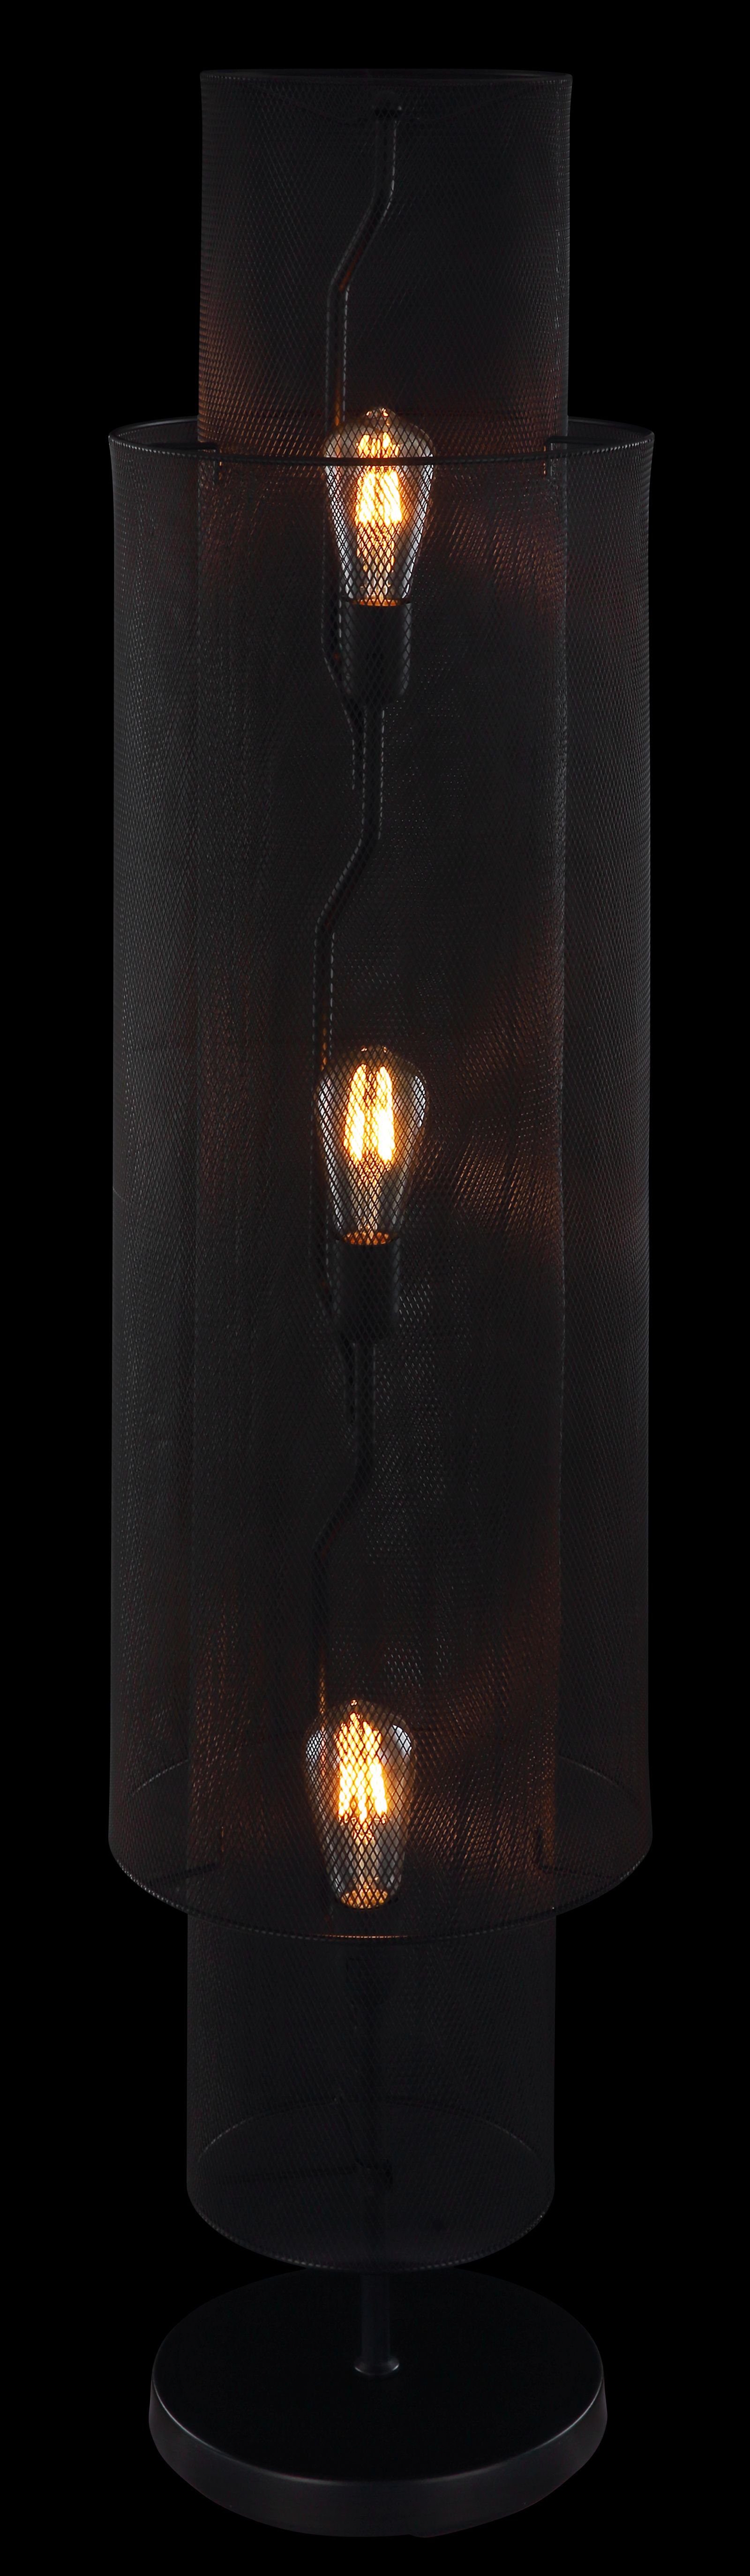 Stehlampe Stehlampe LEUCHTEN Schwarz Stehleuchte Globo GLOBO GLOBO Wohnzimmer 3 Flammig Industrie